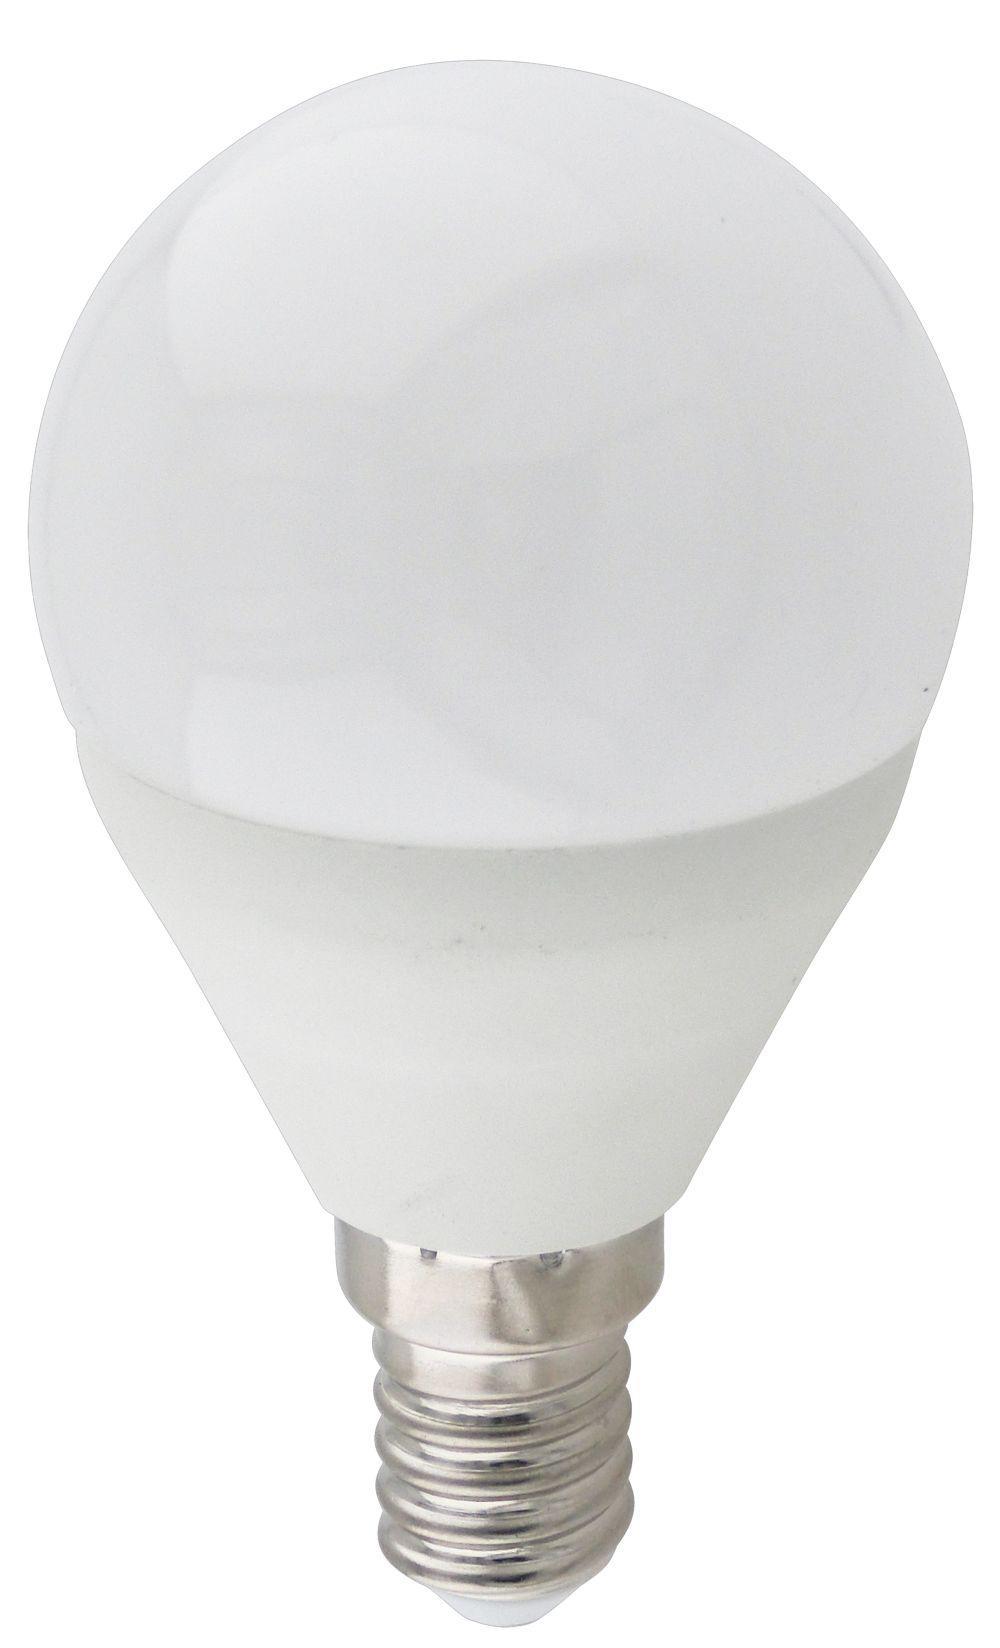 90121381 Лампа светодиодная K4QW70ELC Premium E14 220 В 7 Вт шар малый матовая 560 Лм теплый белый свет STLM-0112509 ECOLA